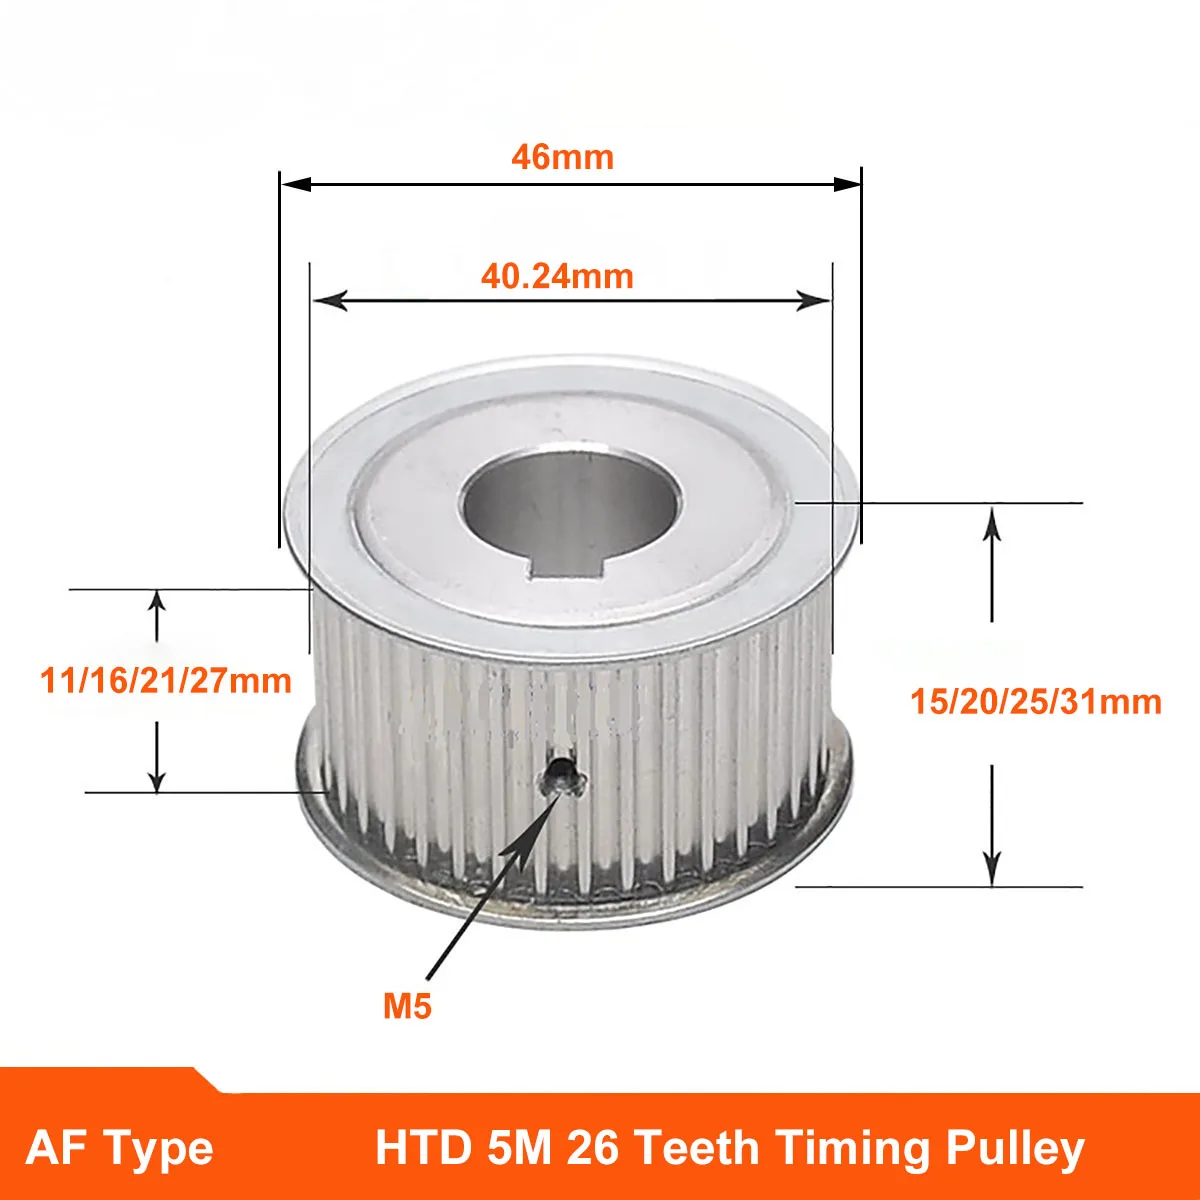 

HTD 5M 26 Teeth Timing Pulley Synchronus Wheel AF Keyway Bore Aluminium Idler Pulley Tooth Width 11 16 21 27mm